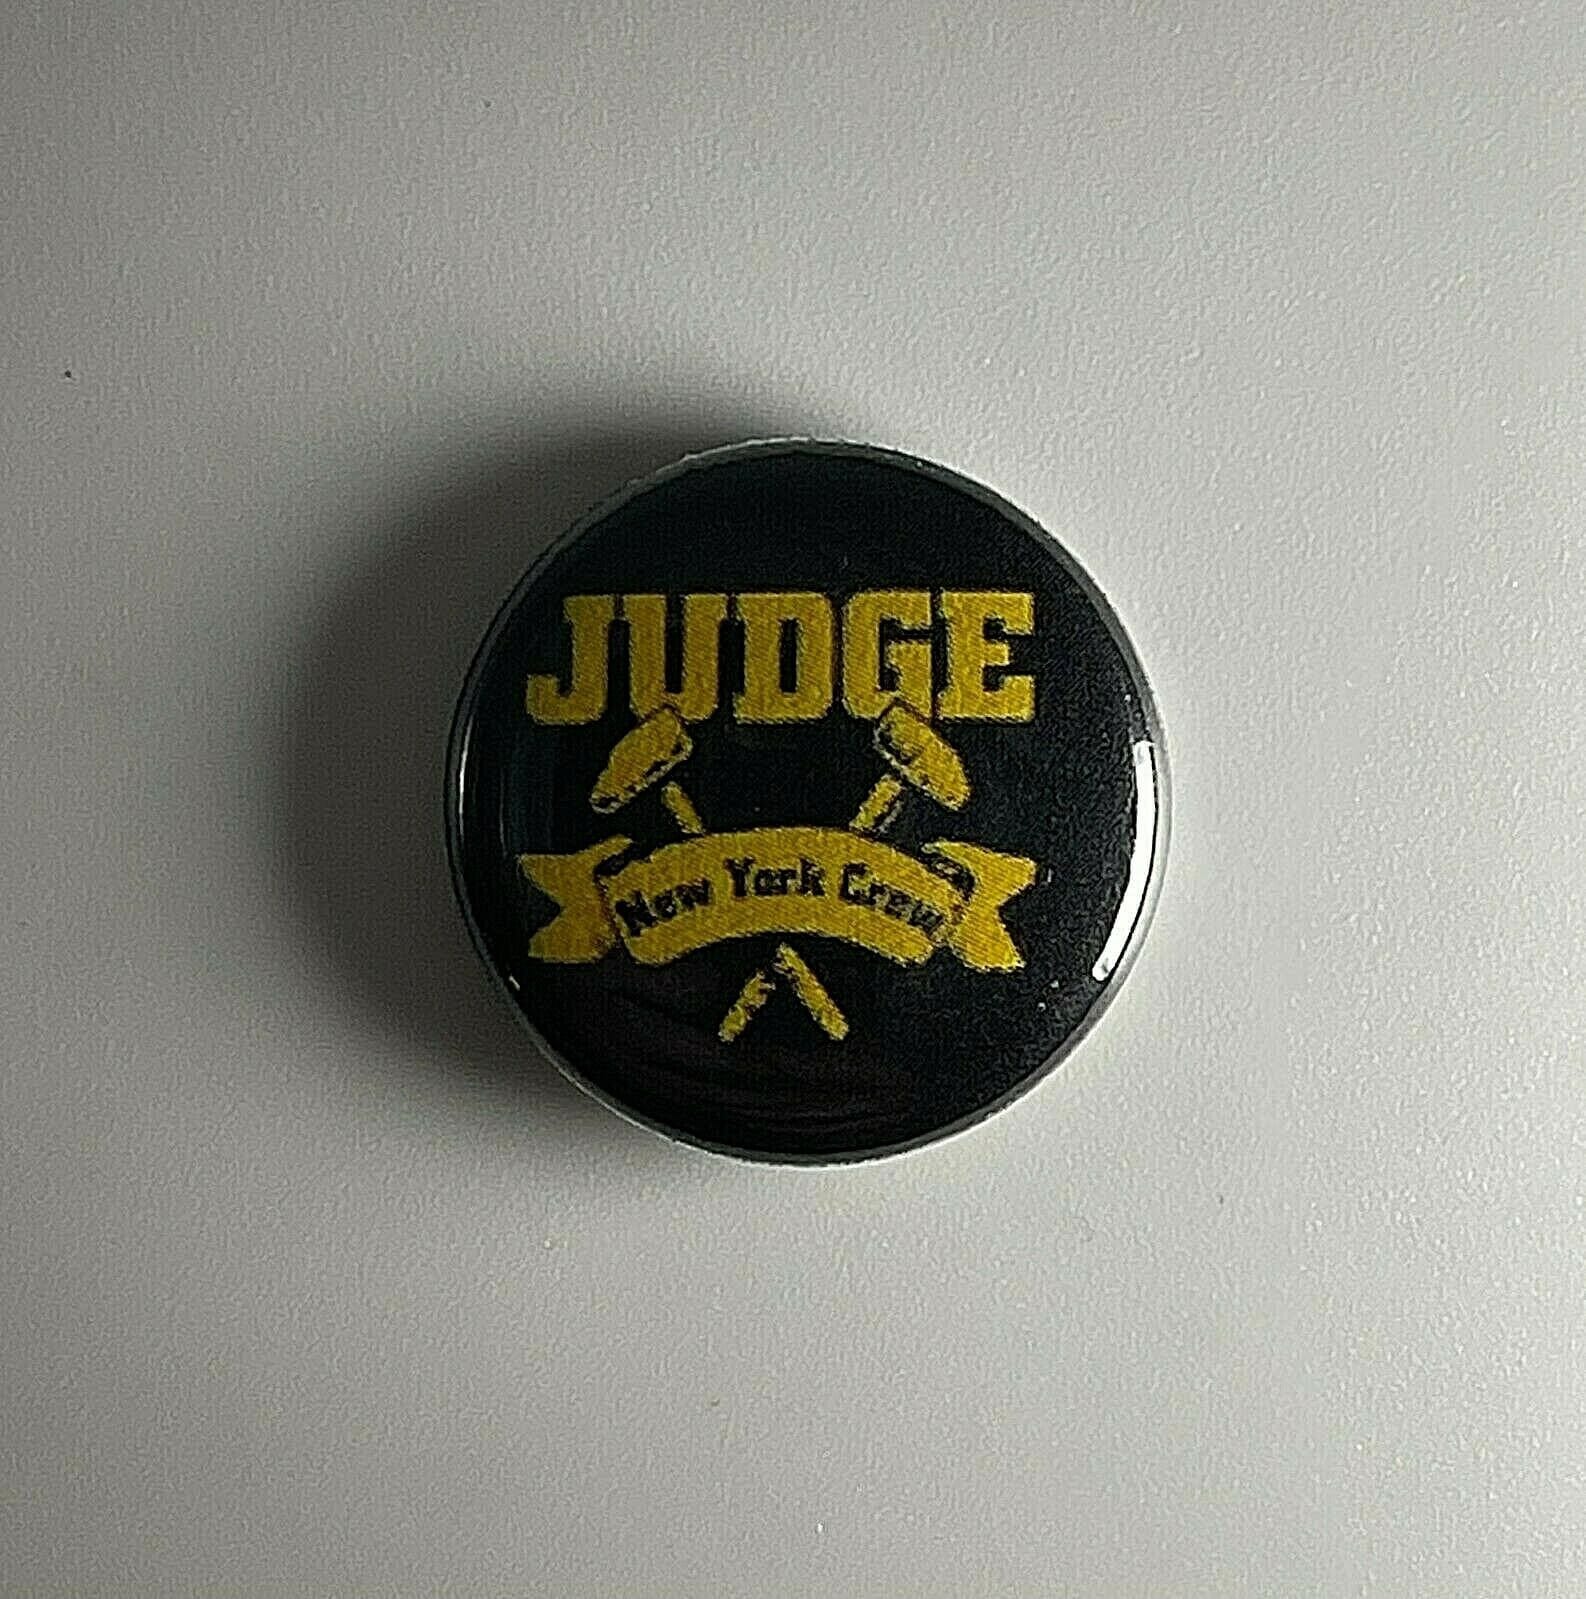 Judge New York Crew Button J002P Pin Badge von Heavylowmerchandise